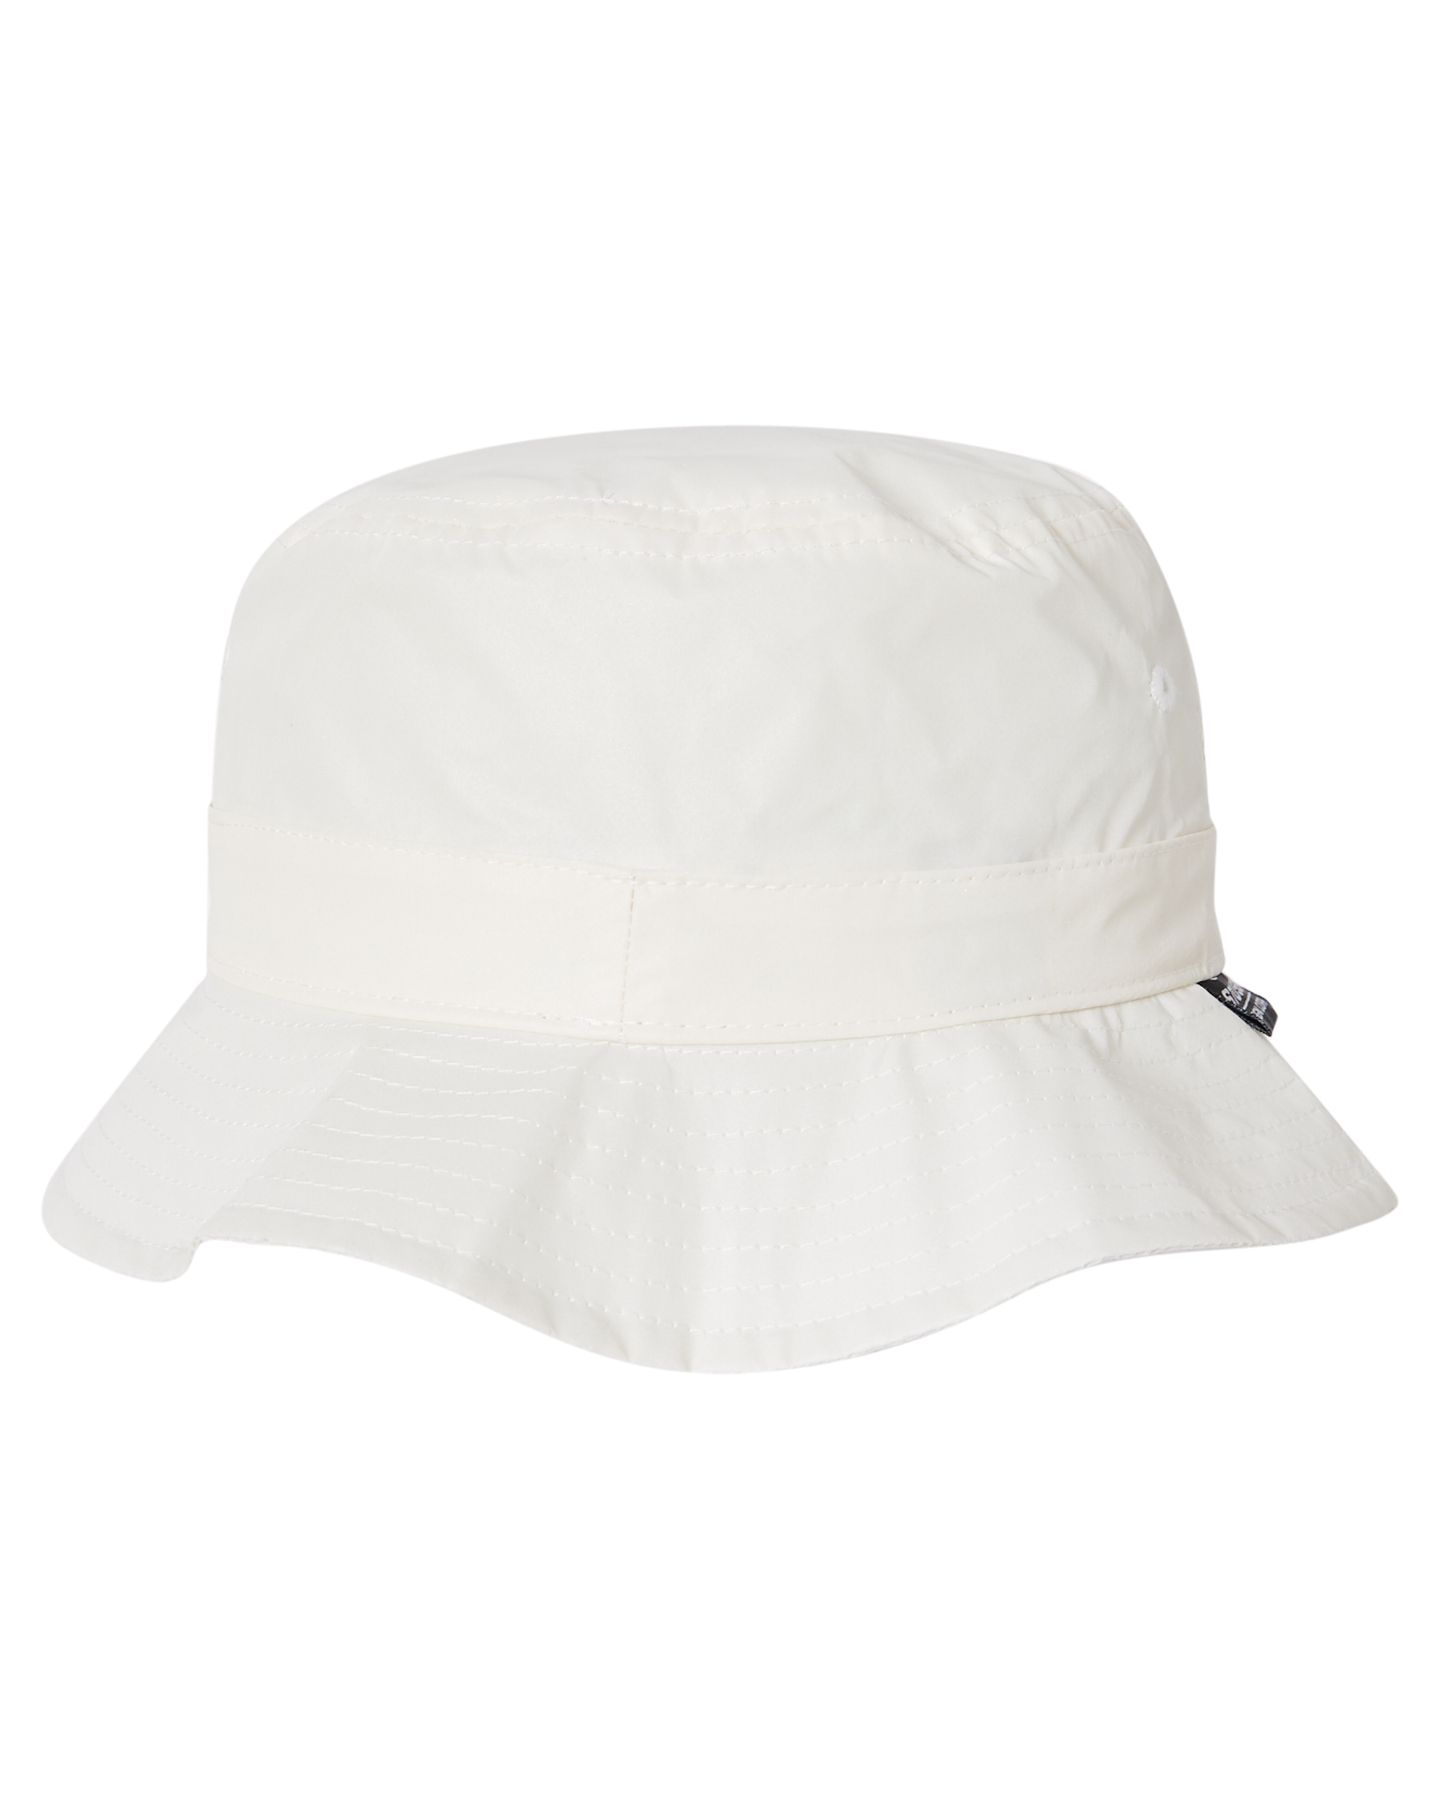 Stussy Stussy Design Corp. Bucket Hat - White | SurfStitch